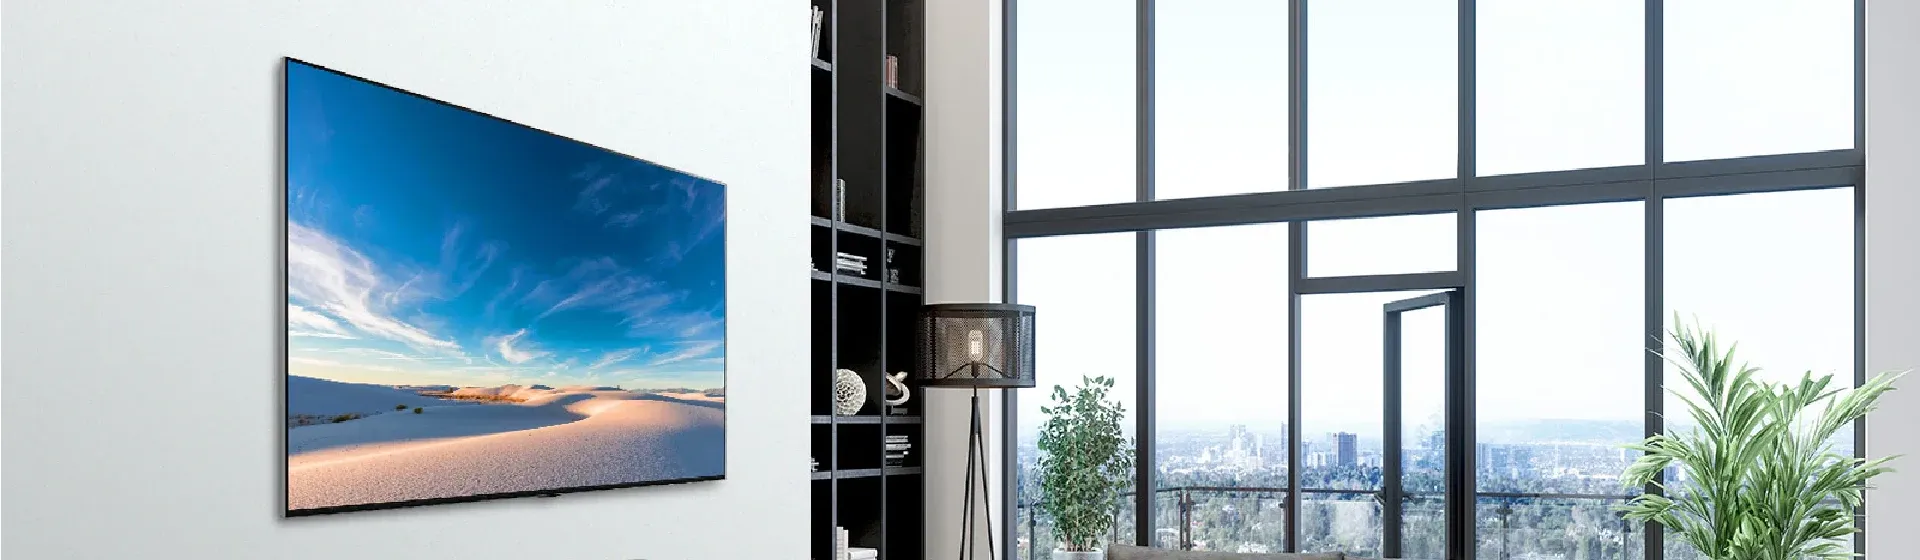 Smart TV LG QNED90 em parede de sala de estar elegante